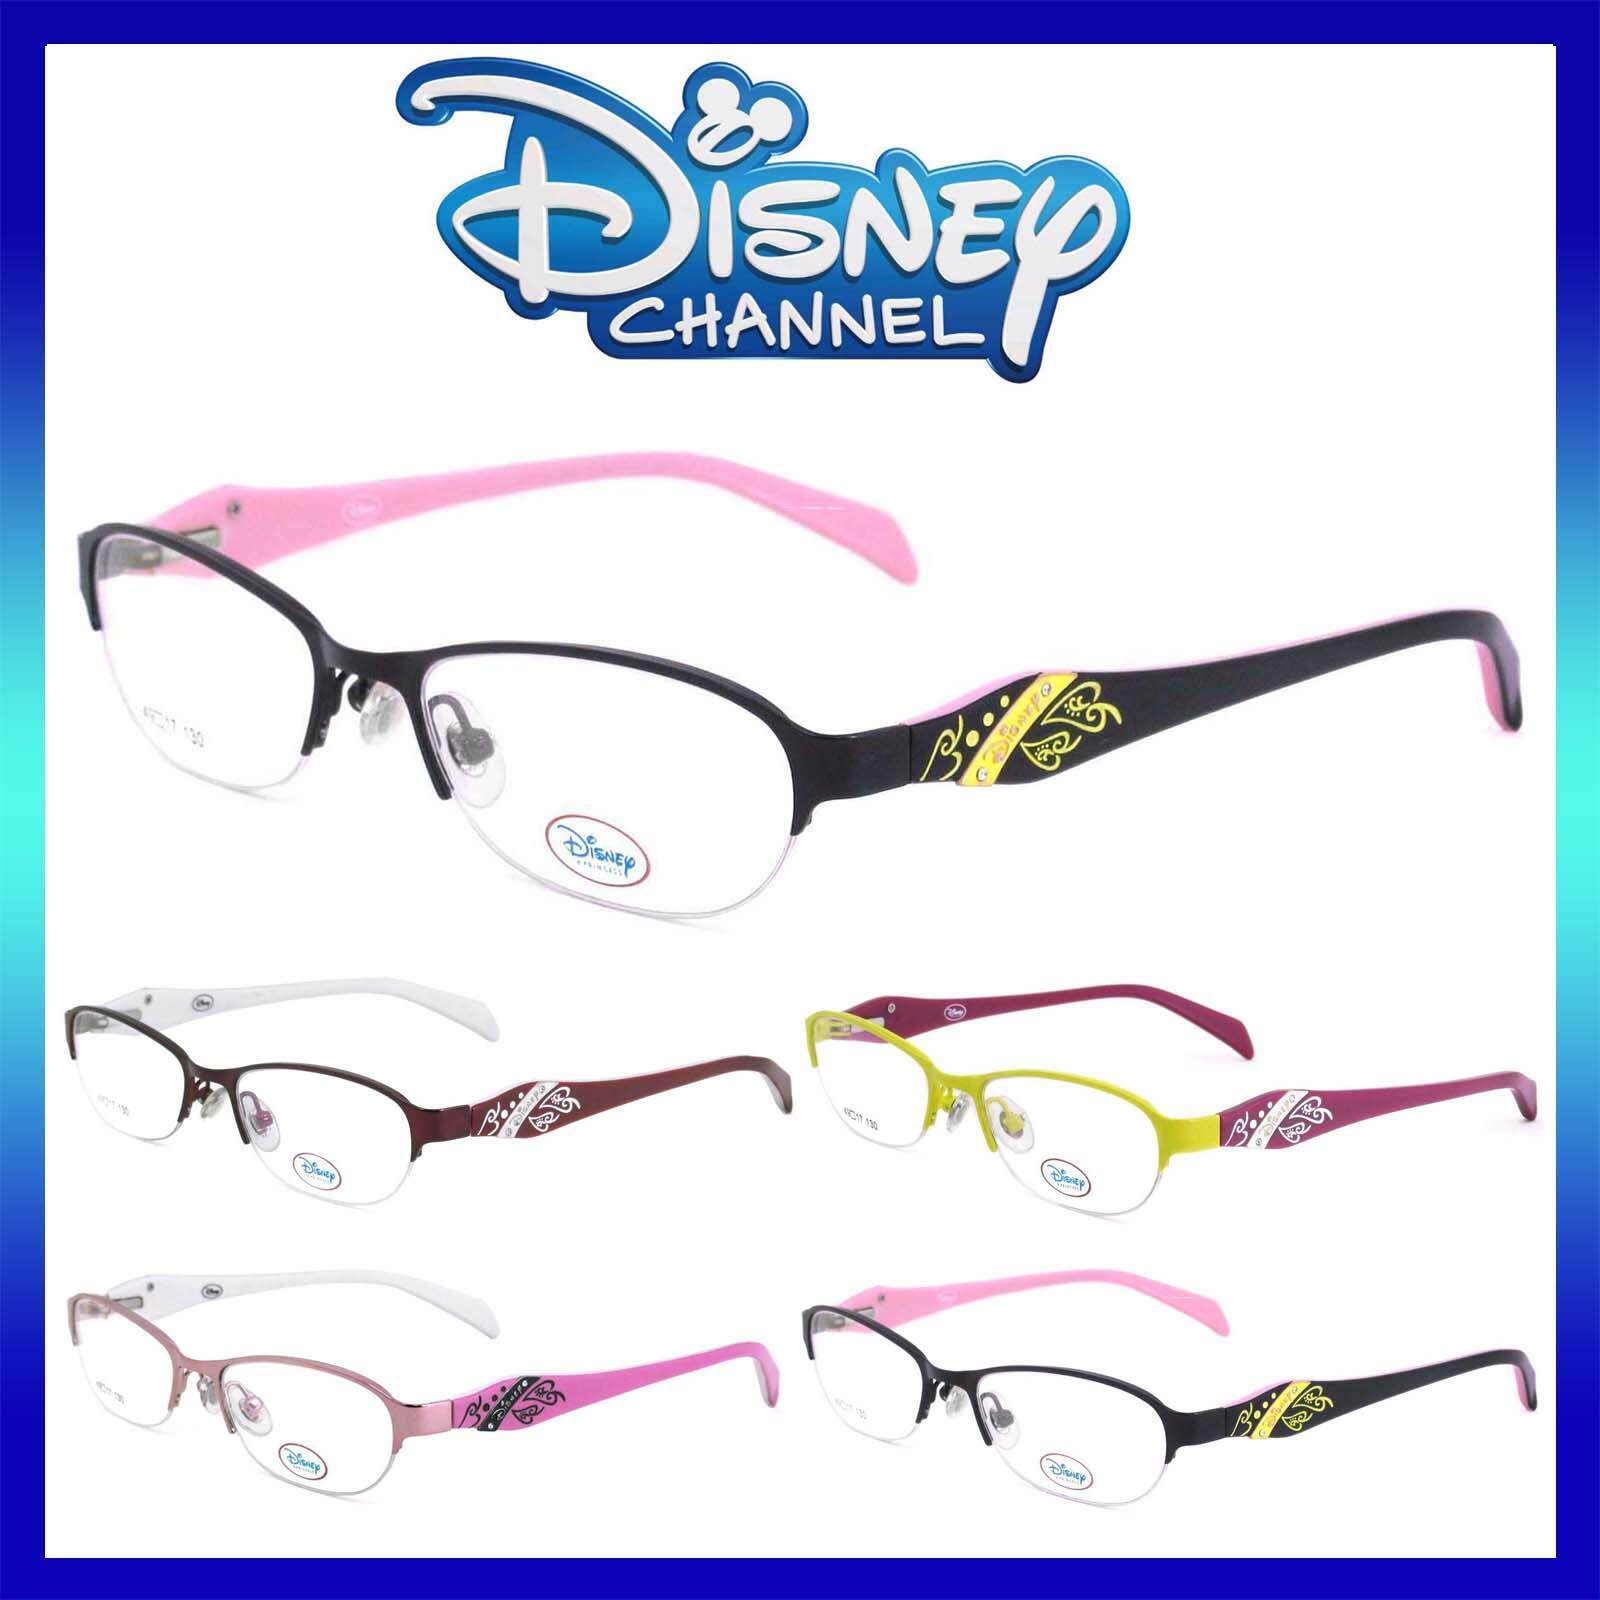 แว่นตาเกาหลีเด็ก Fashion Korea Children แว่นตาเด็ก รุ่น DY 018 กรอบแว่นตาเด็ก Rectangle ทรงสี่เหลี่ยมผืนผ้า Eyeglass baby frame ( สำหรับตัดเลนส์ ) วัสดุ สแตนเลส สตีล เบา ขาสปริง Eyeglass Spring legs Stainless Steel material Eyewear Kid  Top Glasses